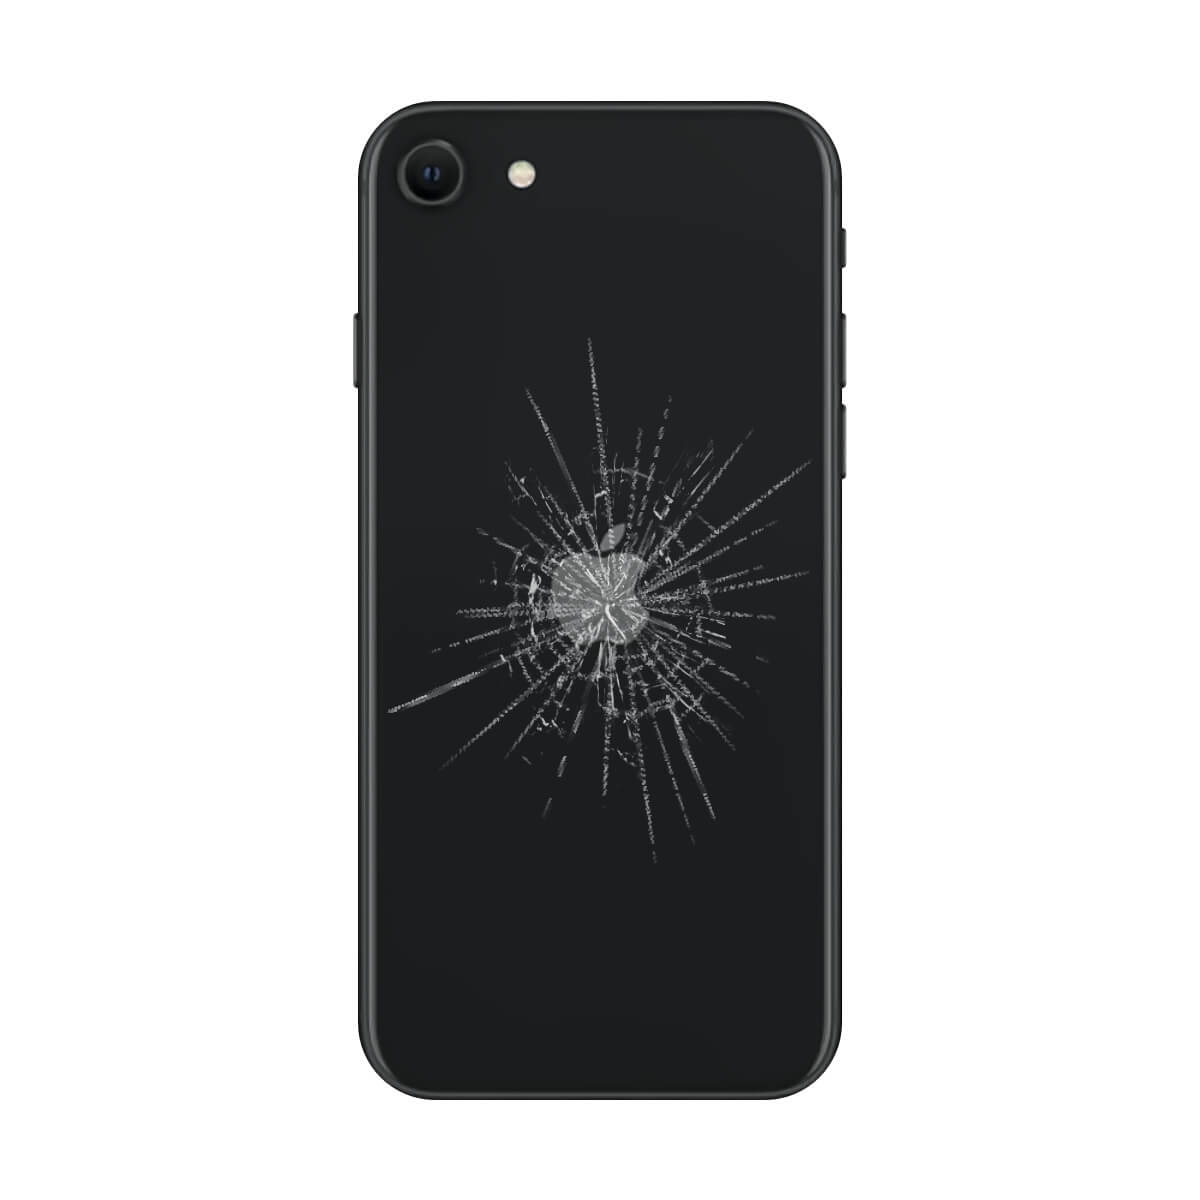 iPhone SE Back Glass Repair Hugmie